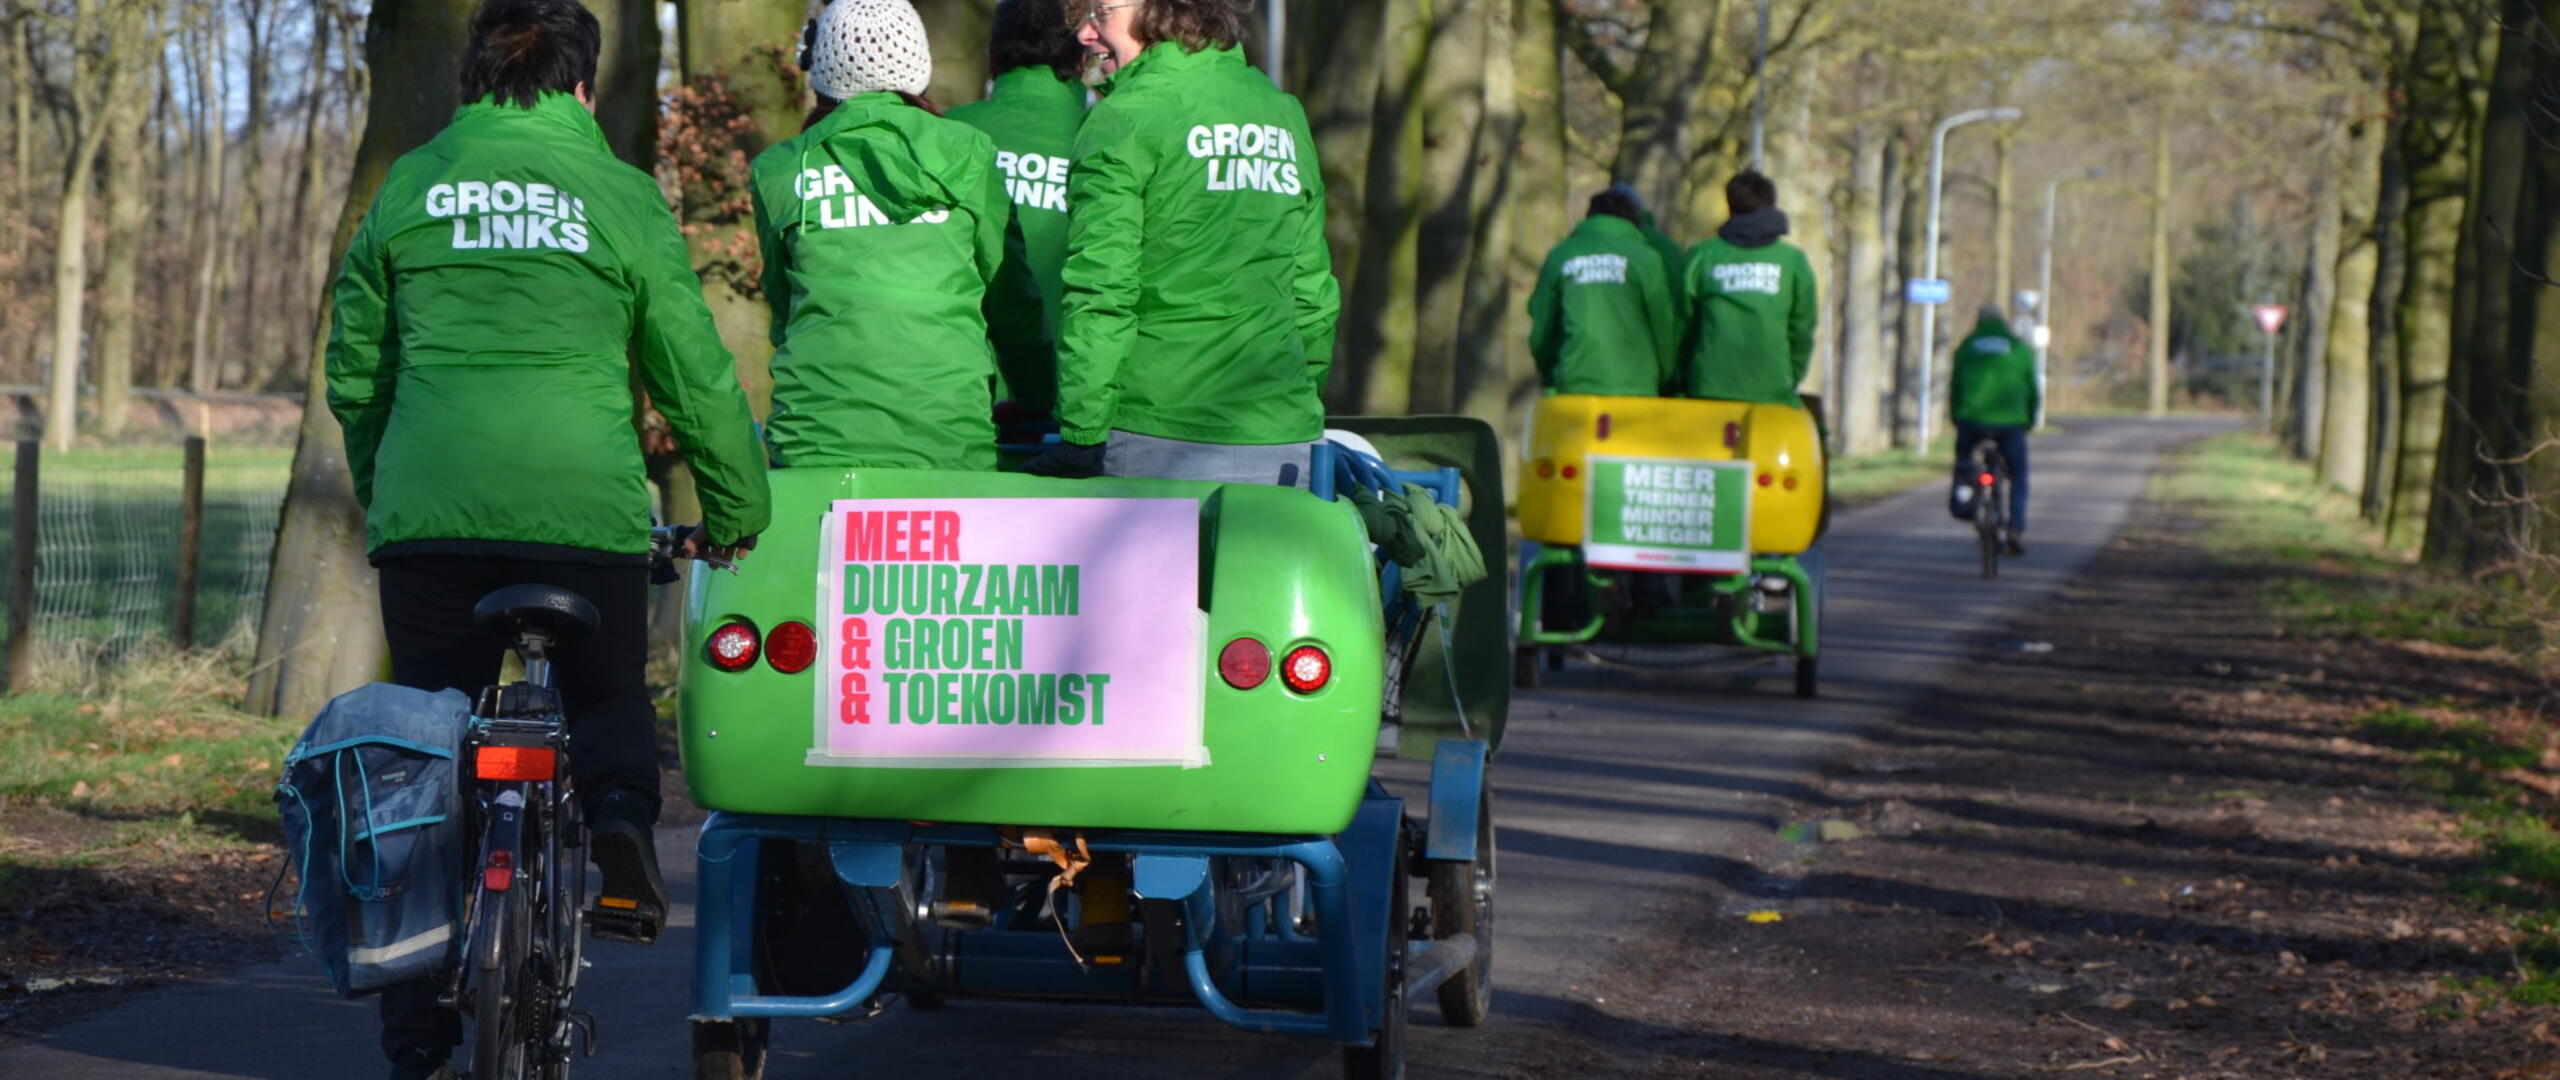 GroenLinks Wijchen, op de fiets.